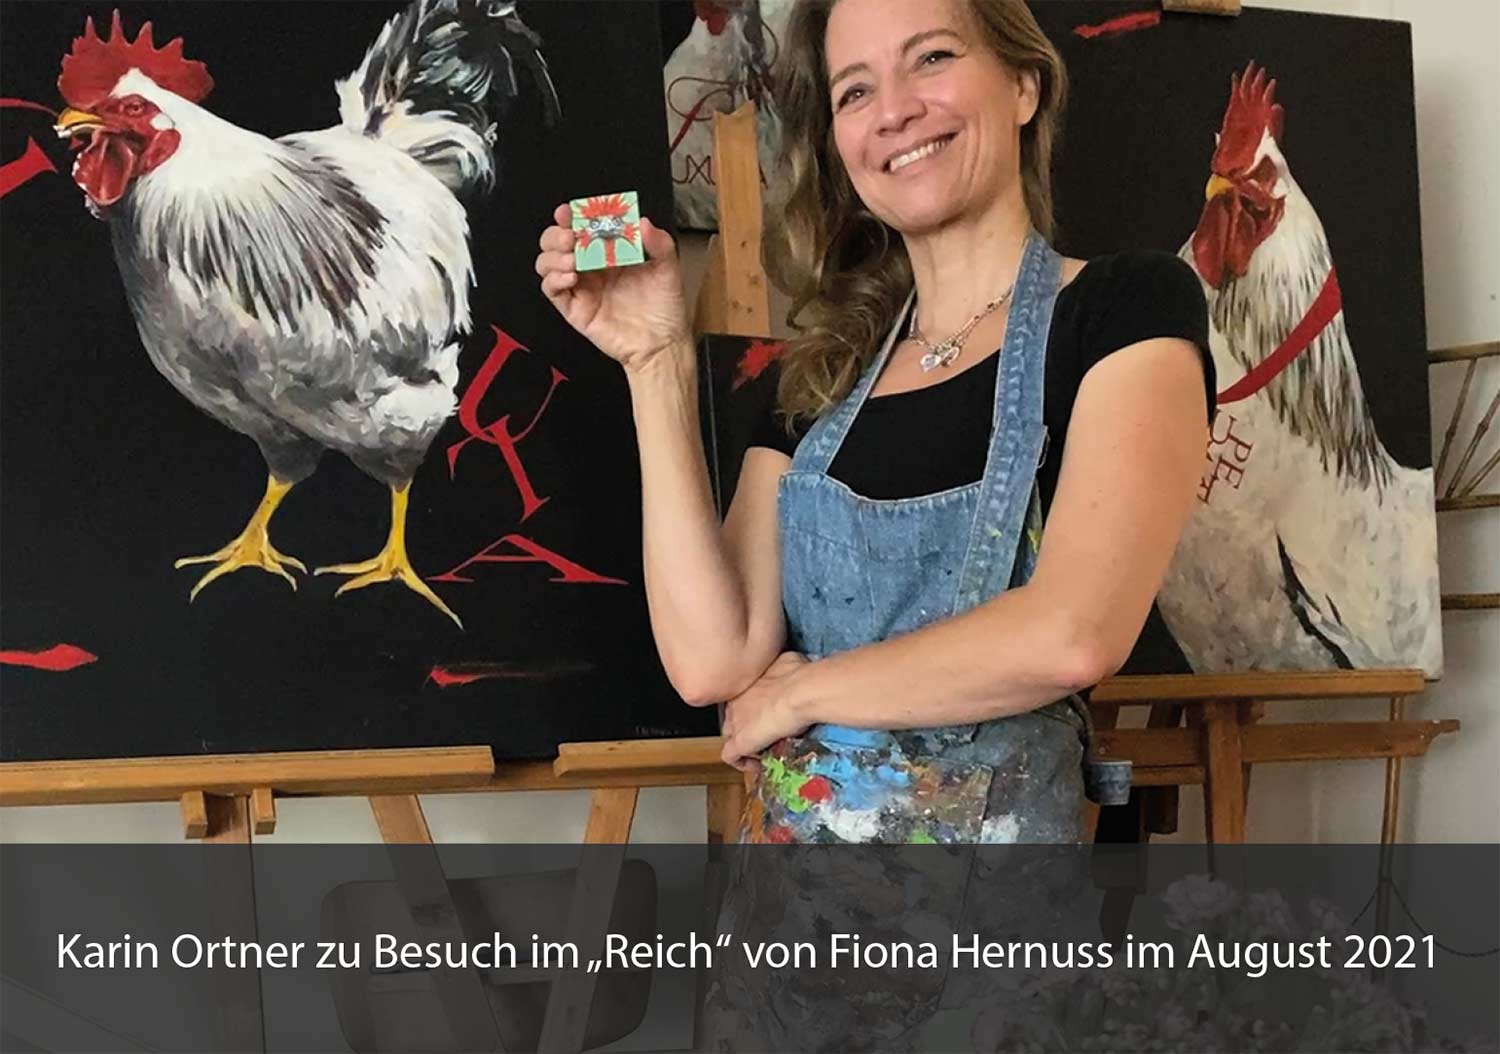 Karin Ortner zu Besuch bei Fiona Hernuss